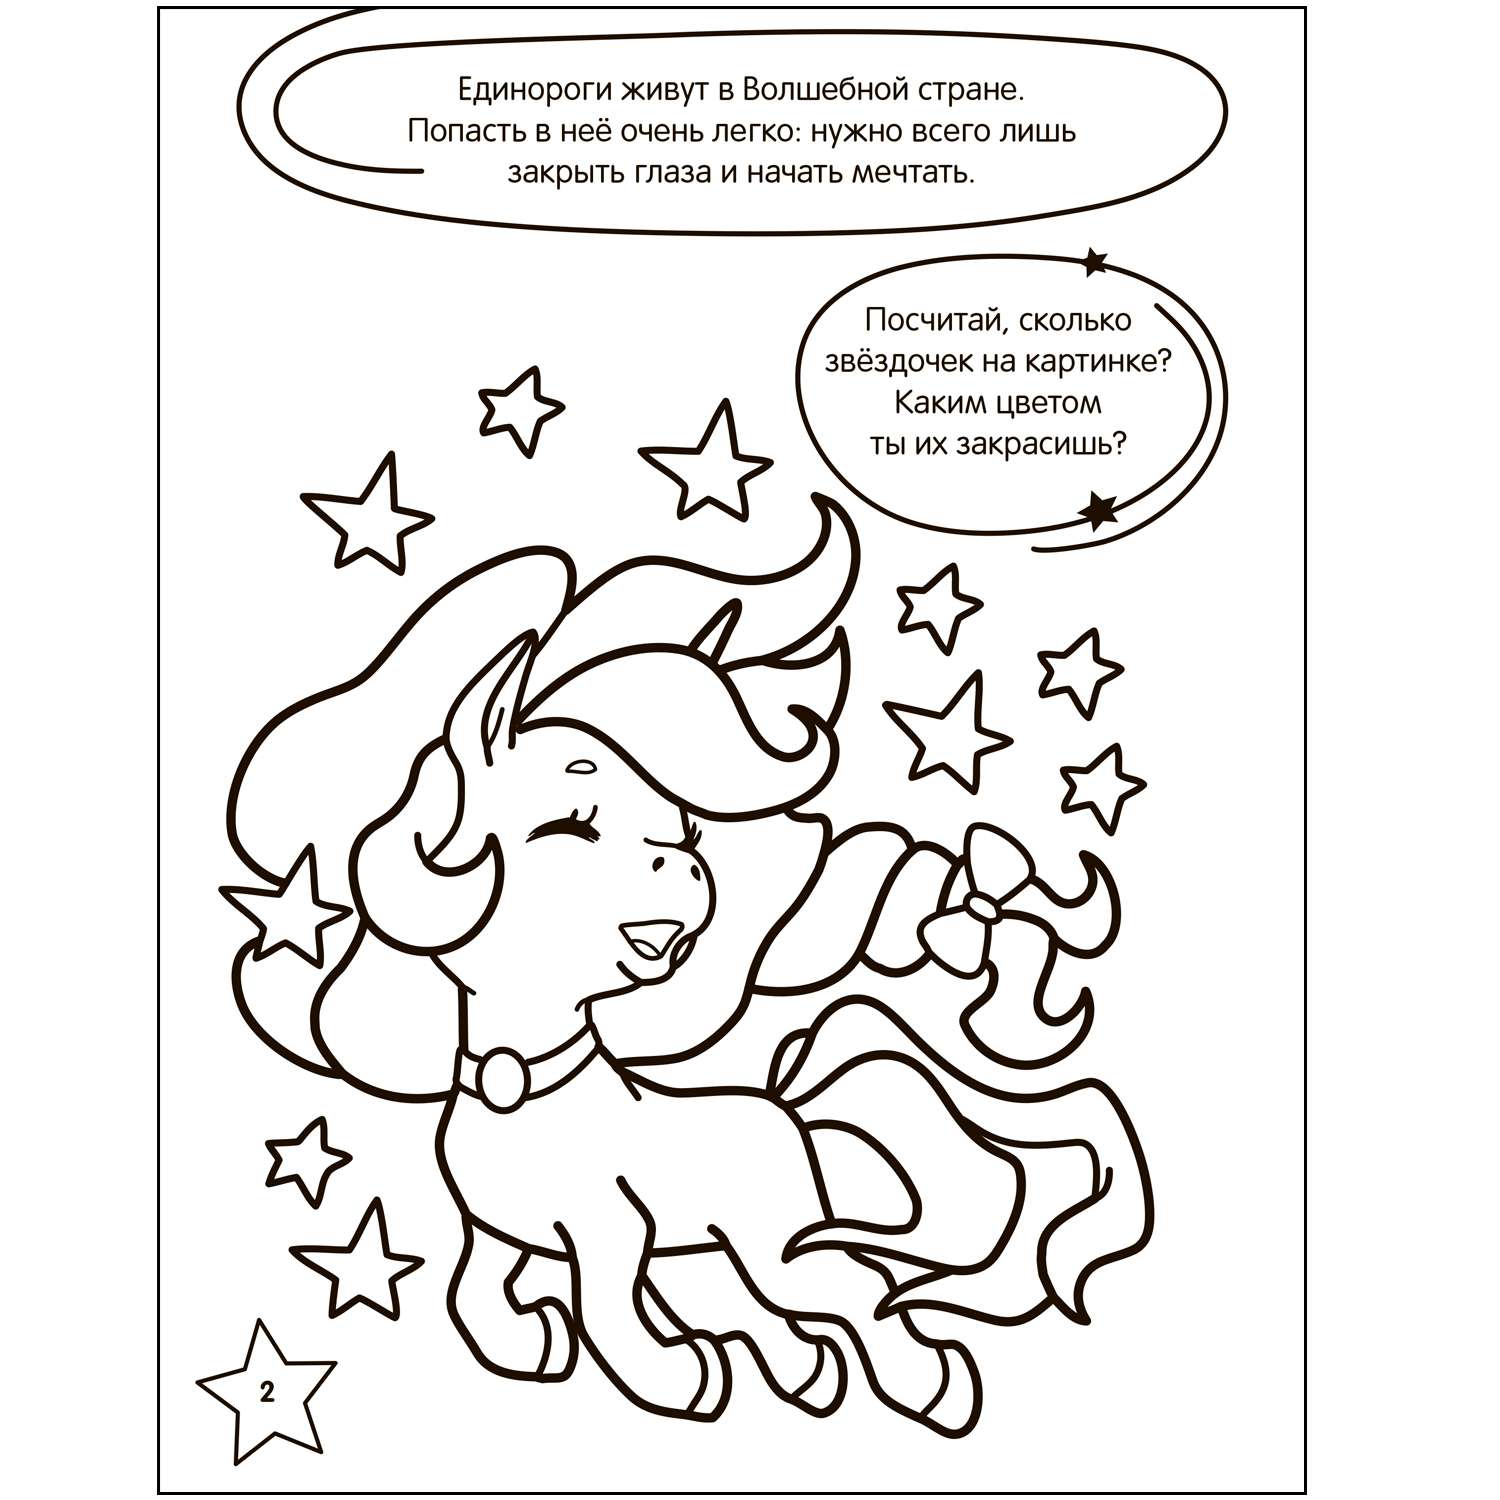 Книга МОЗАИКА kids Раскраска с заданиями Единороги - фото 9